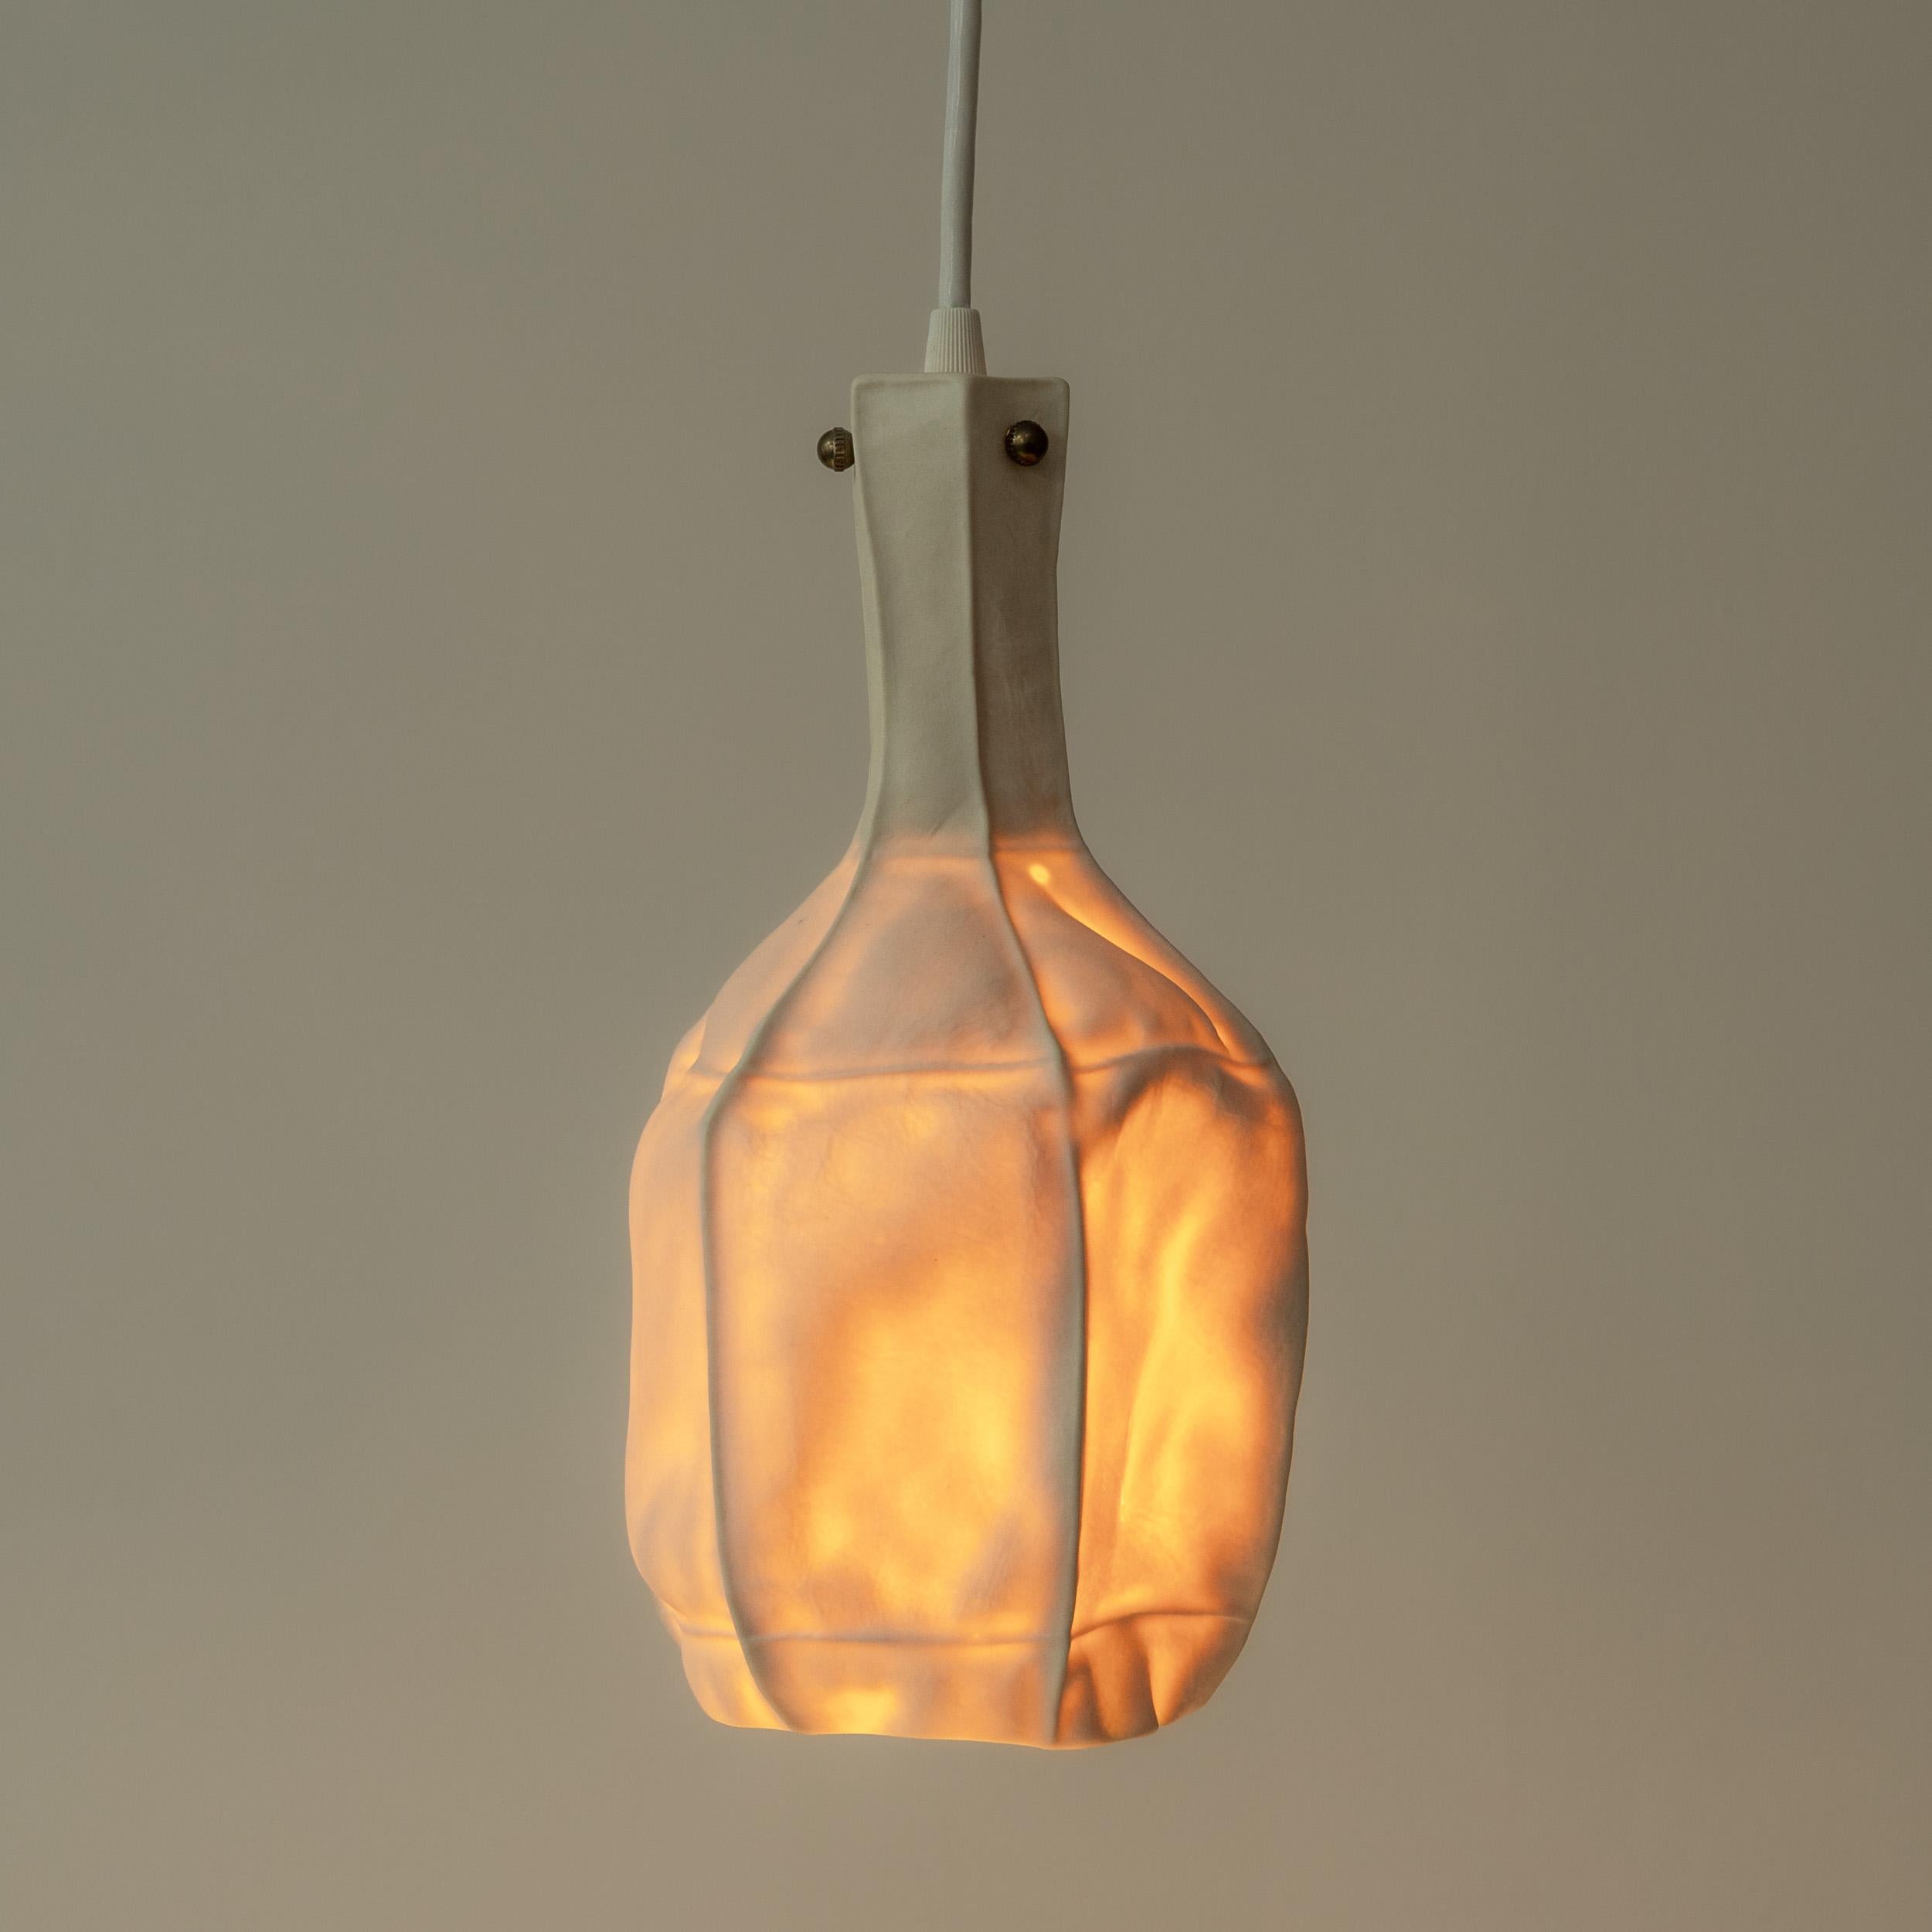 Lampe suspendue unique de la série Kawa par Luft Tanaka Studio

Suspension en porcelaine tactile et texturée à la forme unique et organique. Le diffuseur en porcelaine translucide projette une lueur de couleur chaude, parfaite pour une salle à